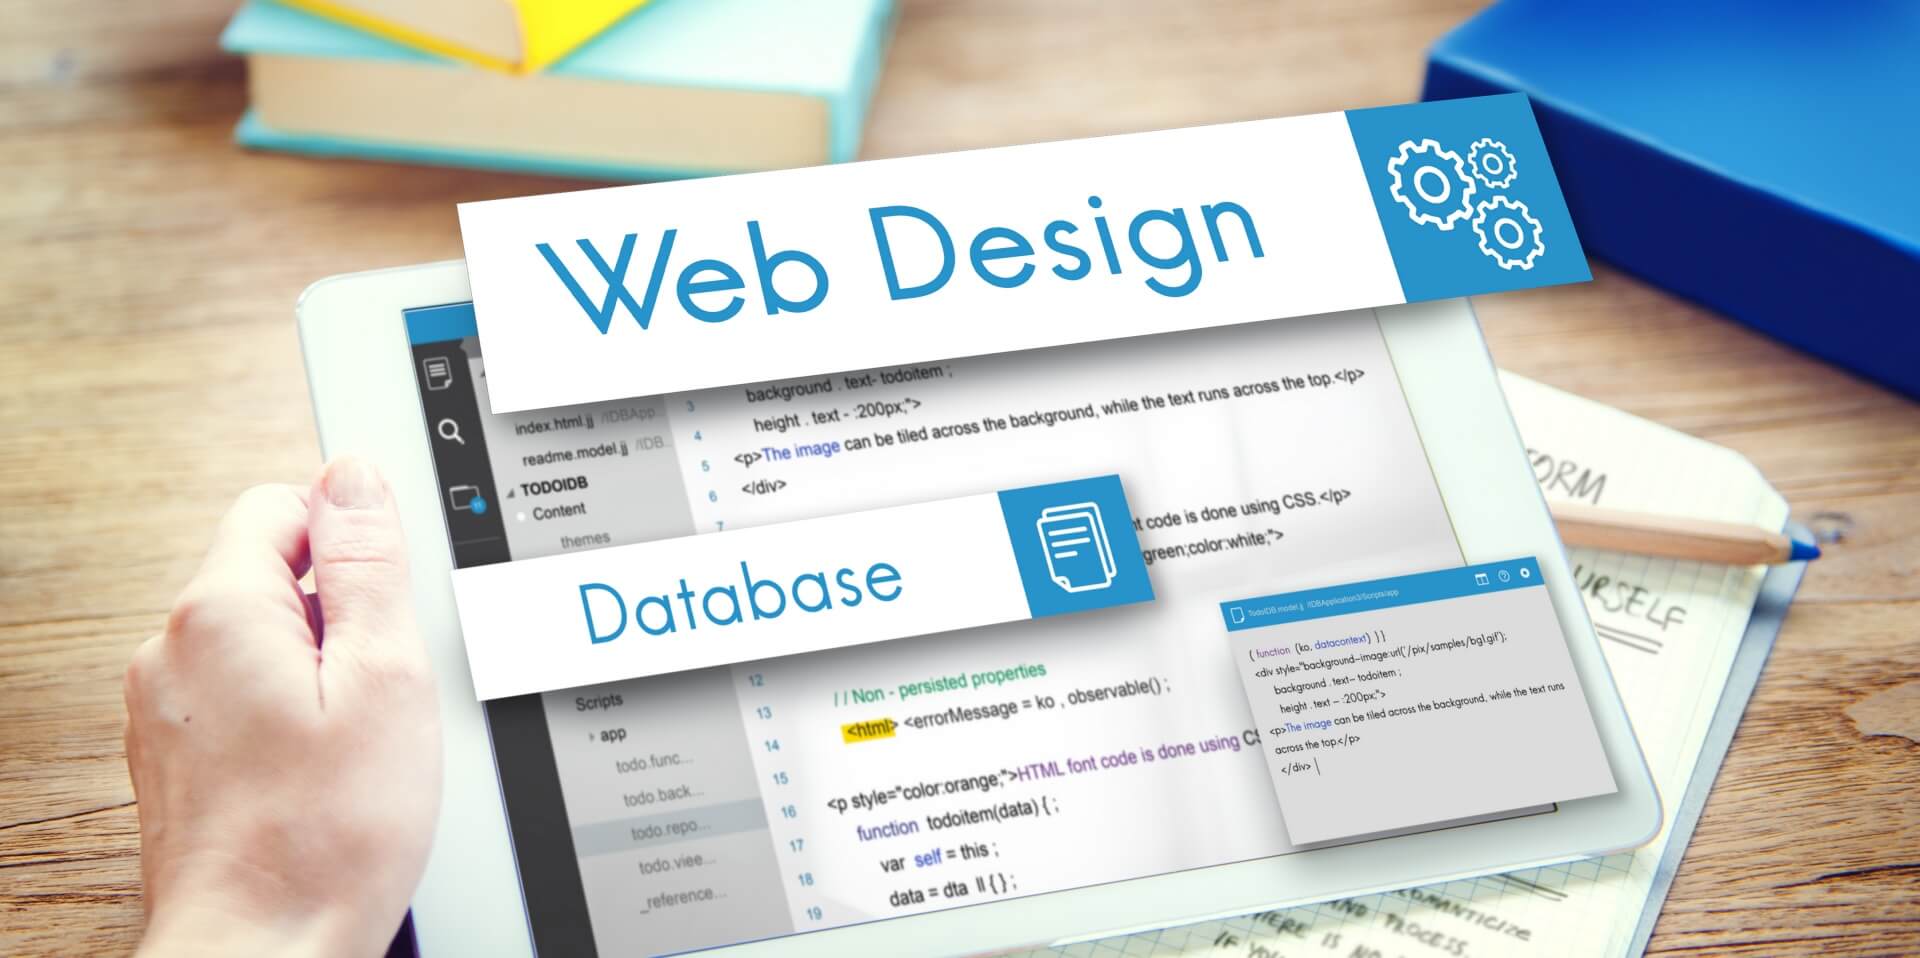 bedste webdesign - en introduktion til web design for begyndere